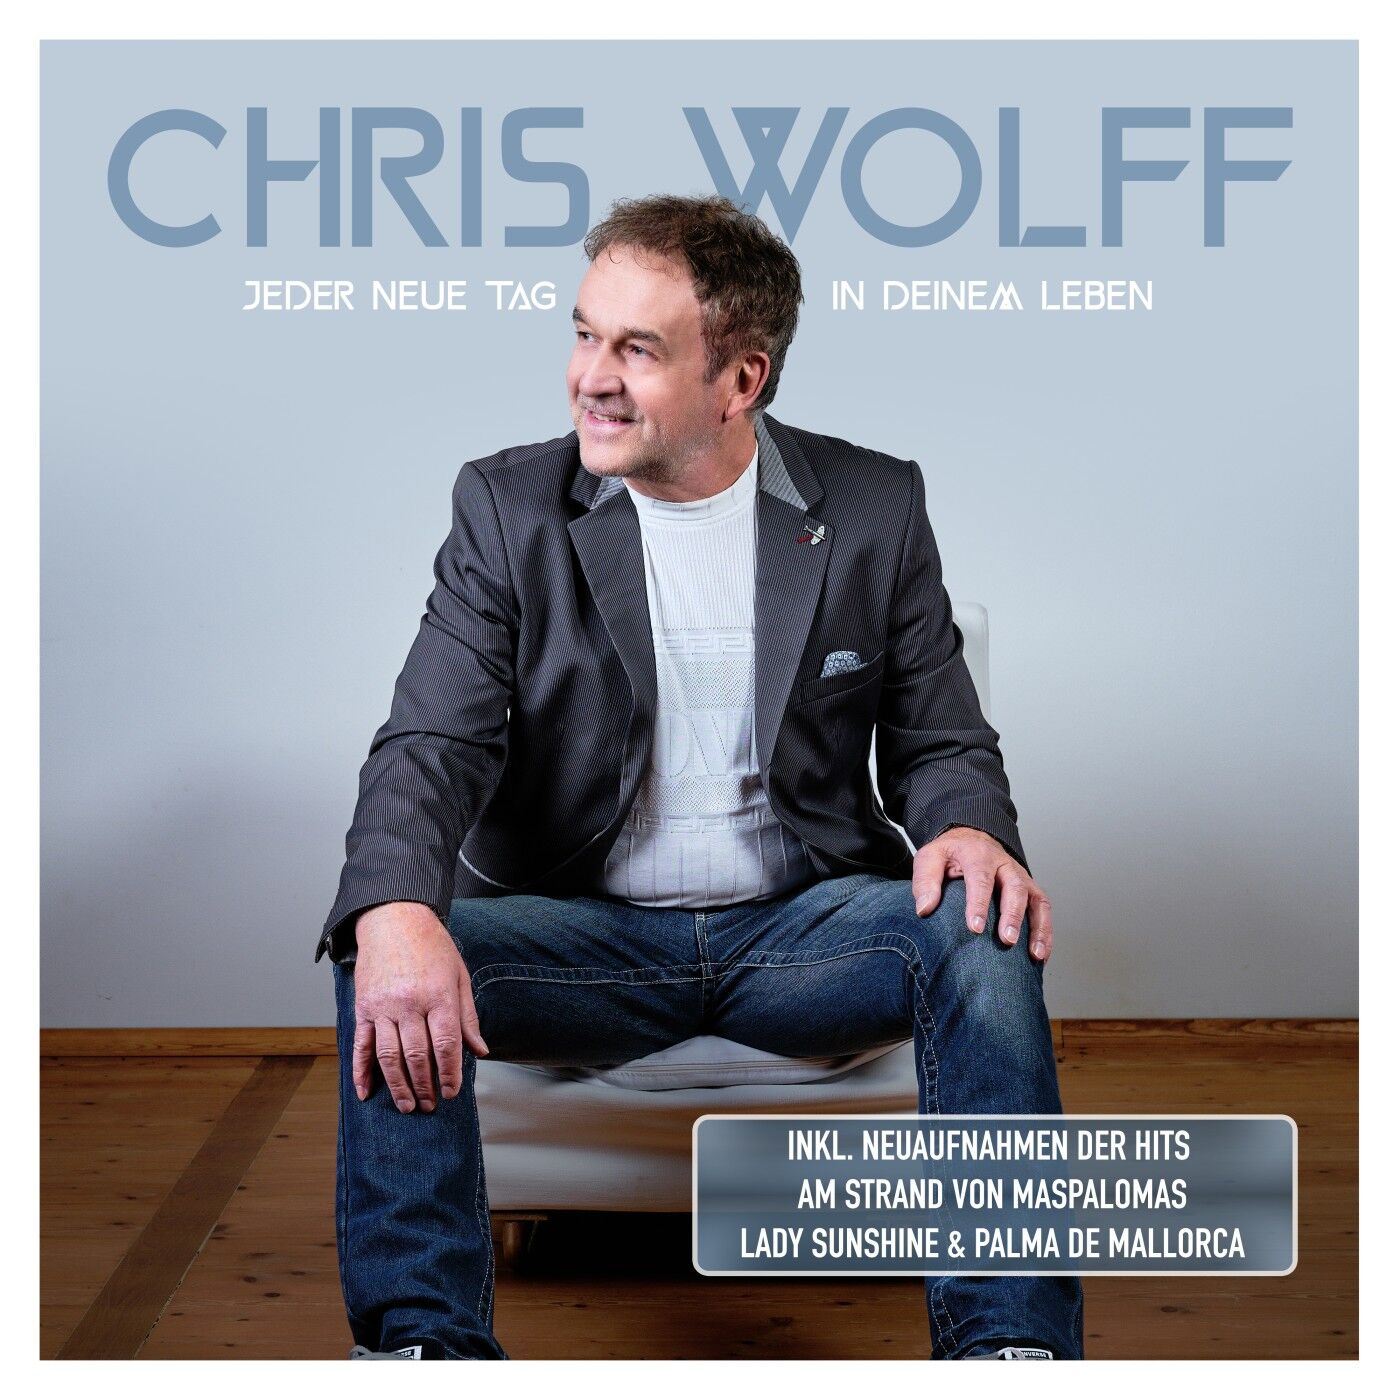 Chris Wolff - Jeder neue Tag in deinem Leben (2023) 